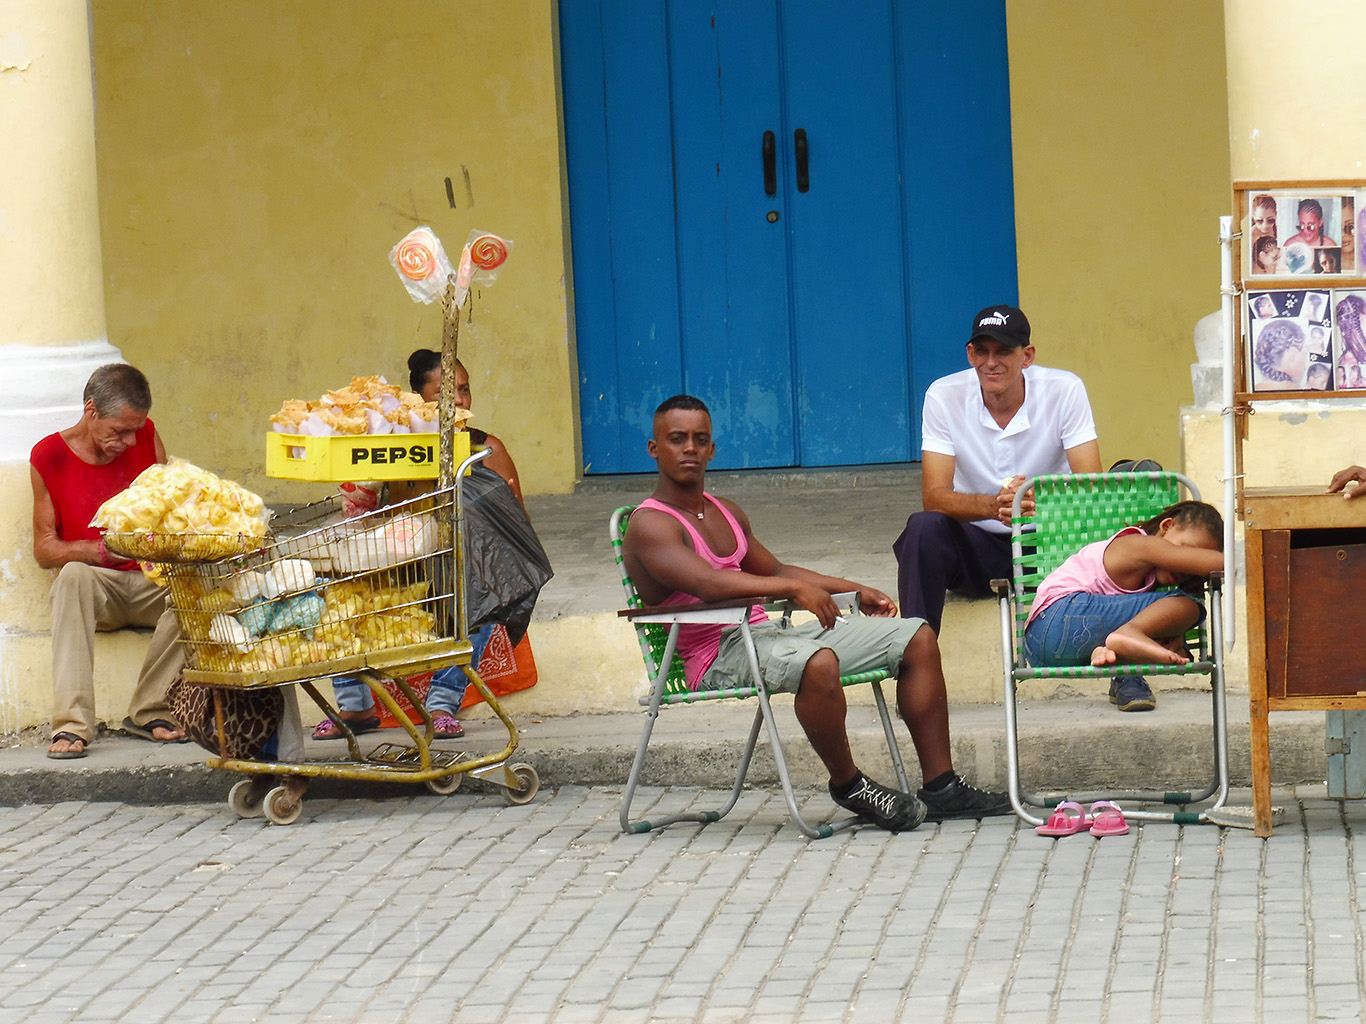 Výraz mañana uslyšíte často, protože na Kubě se nikam nespěchá